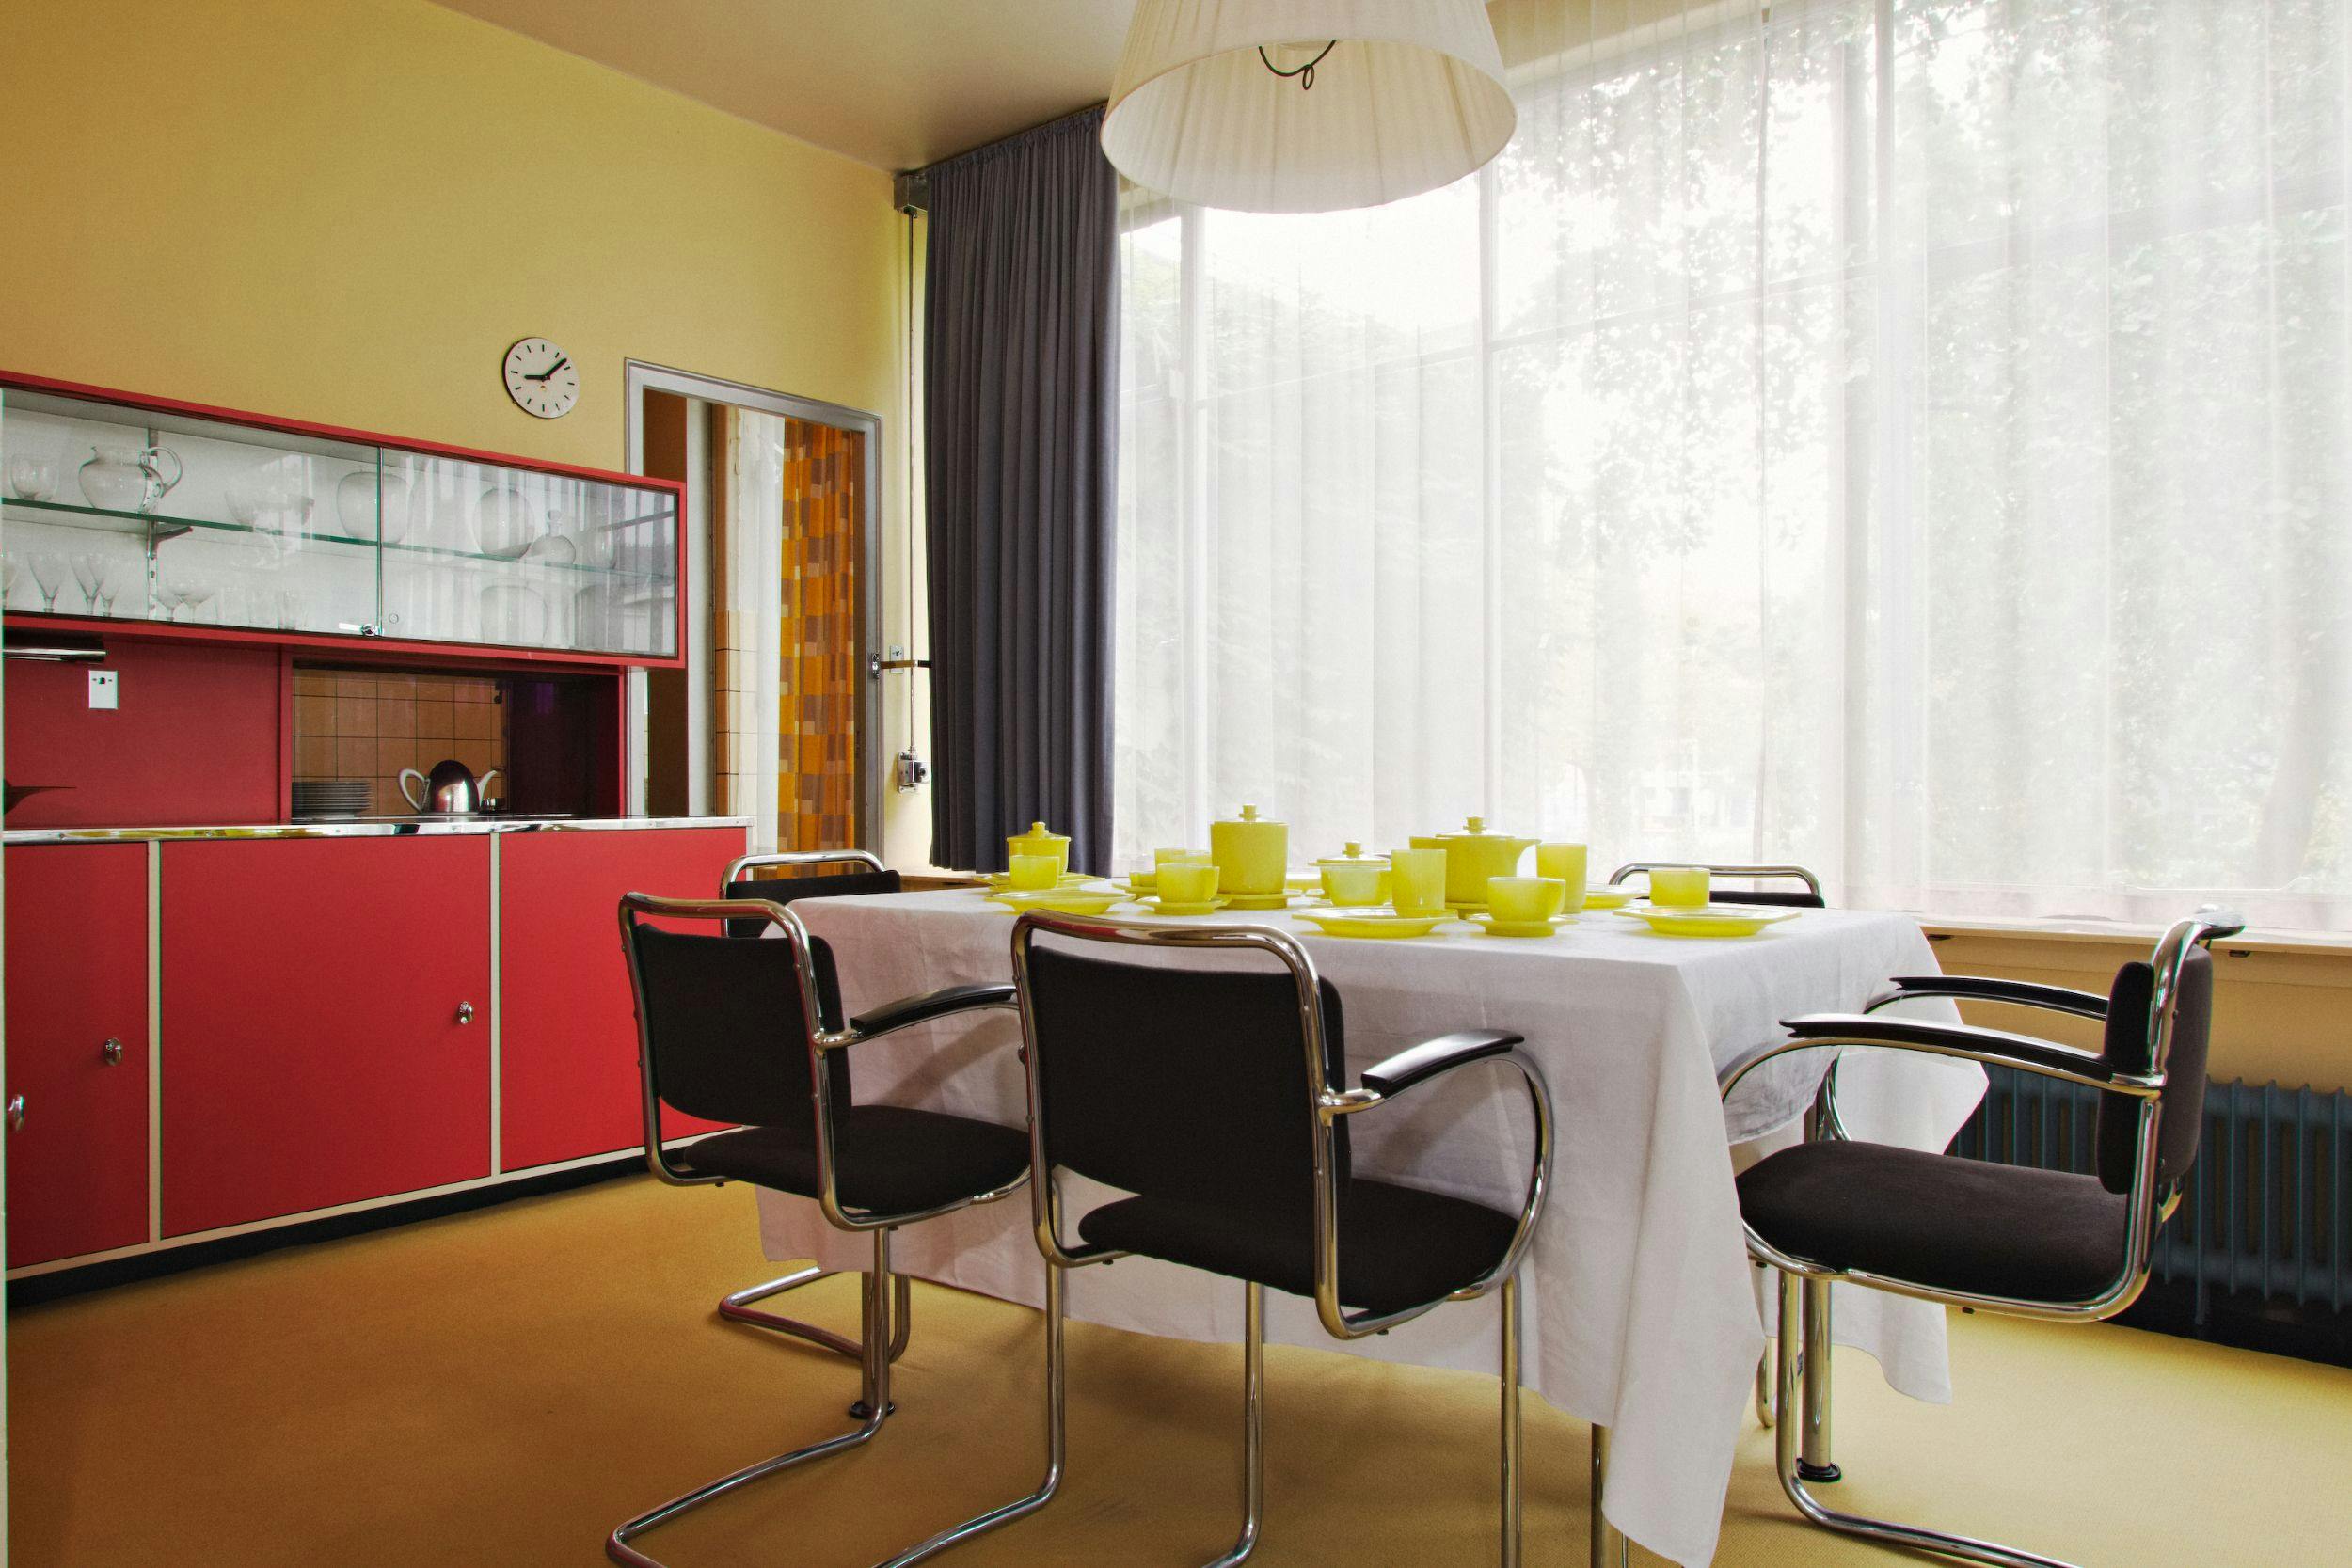 Sonneveld House, dining room. Photo Johannes Schwartz 